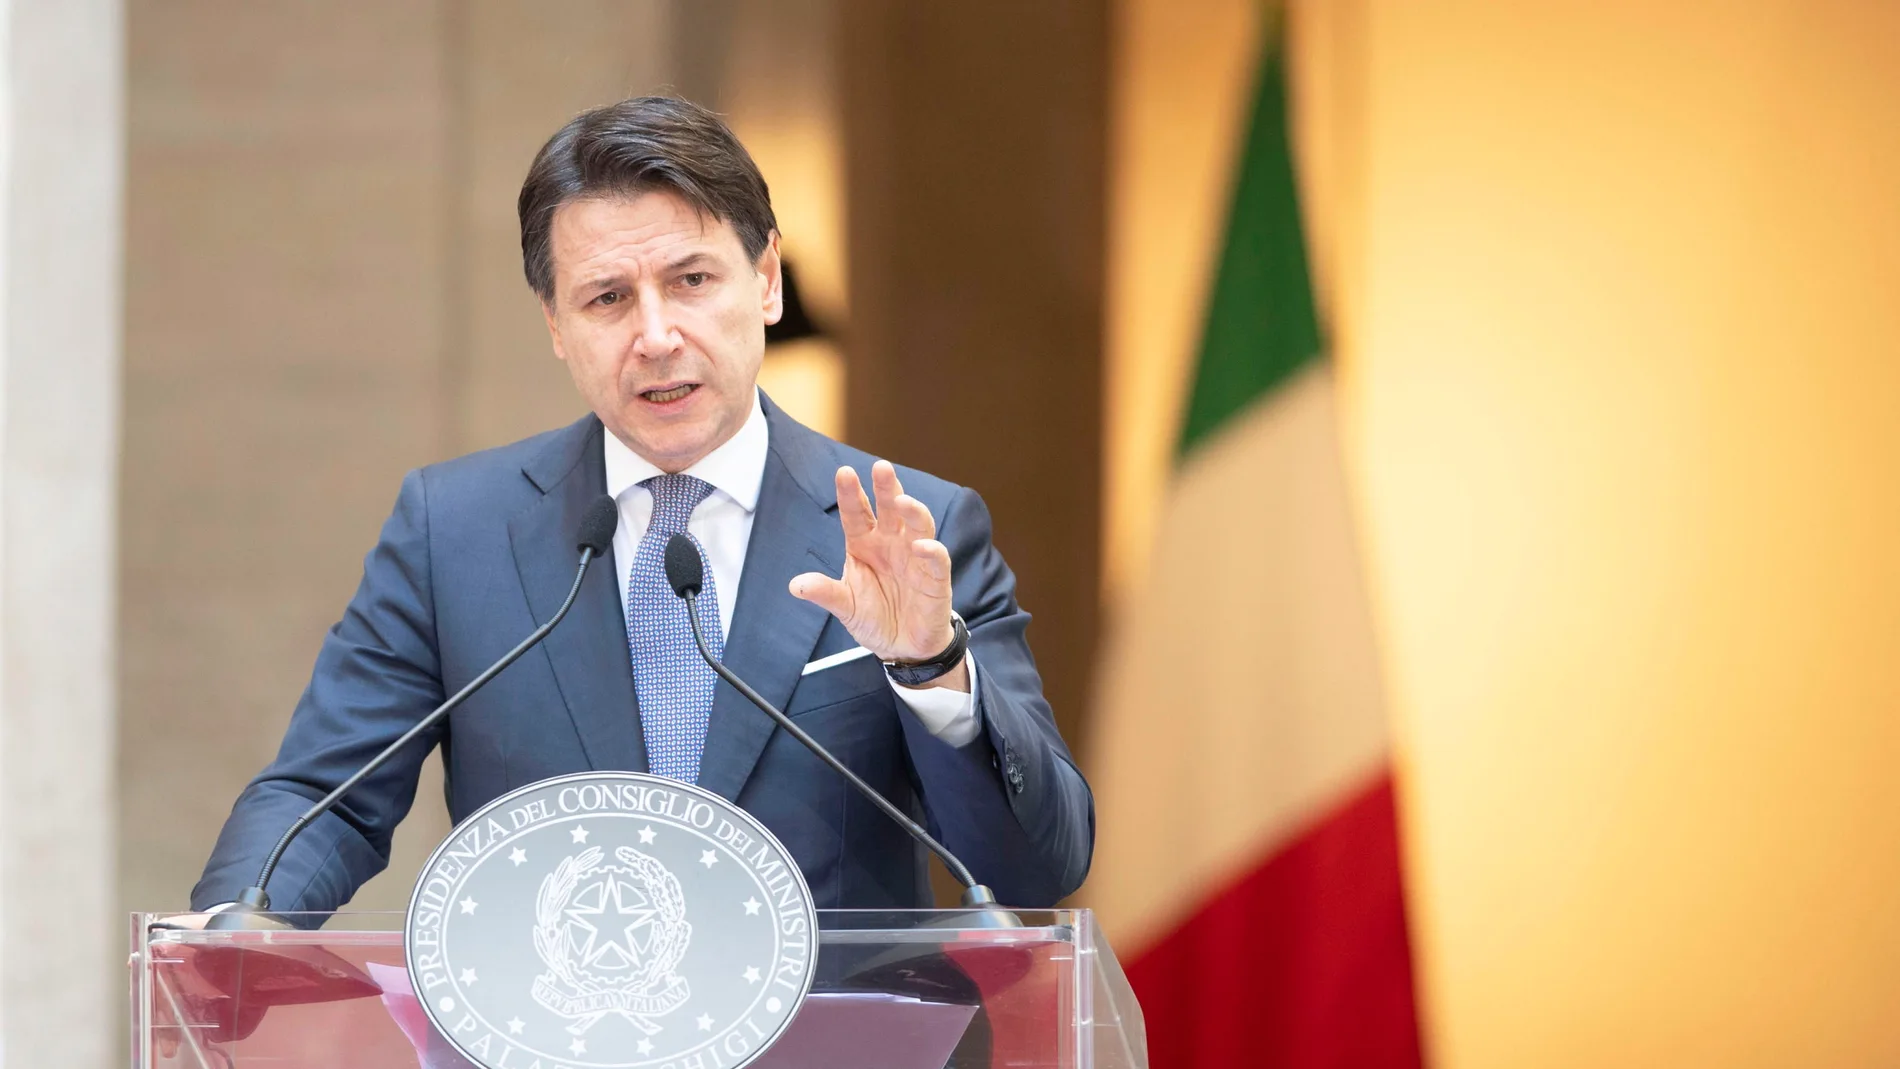 Italian PM Conte's press conference